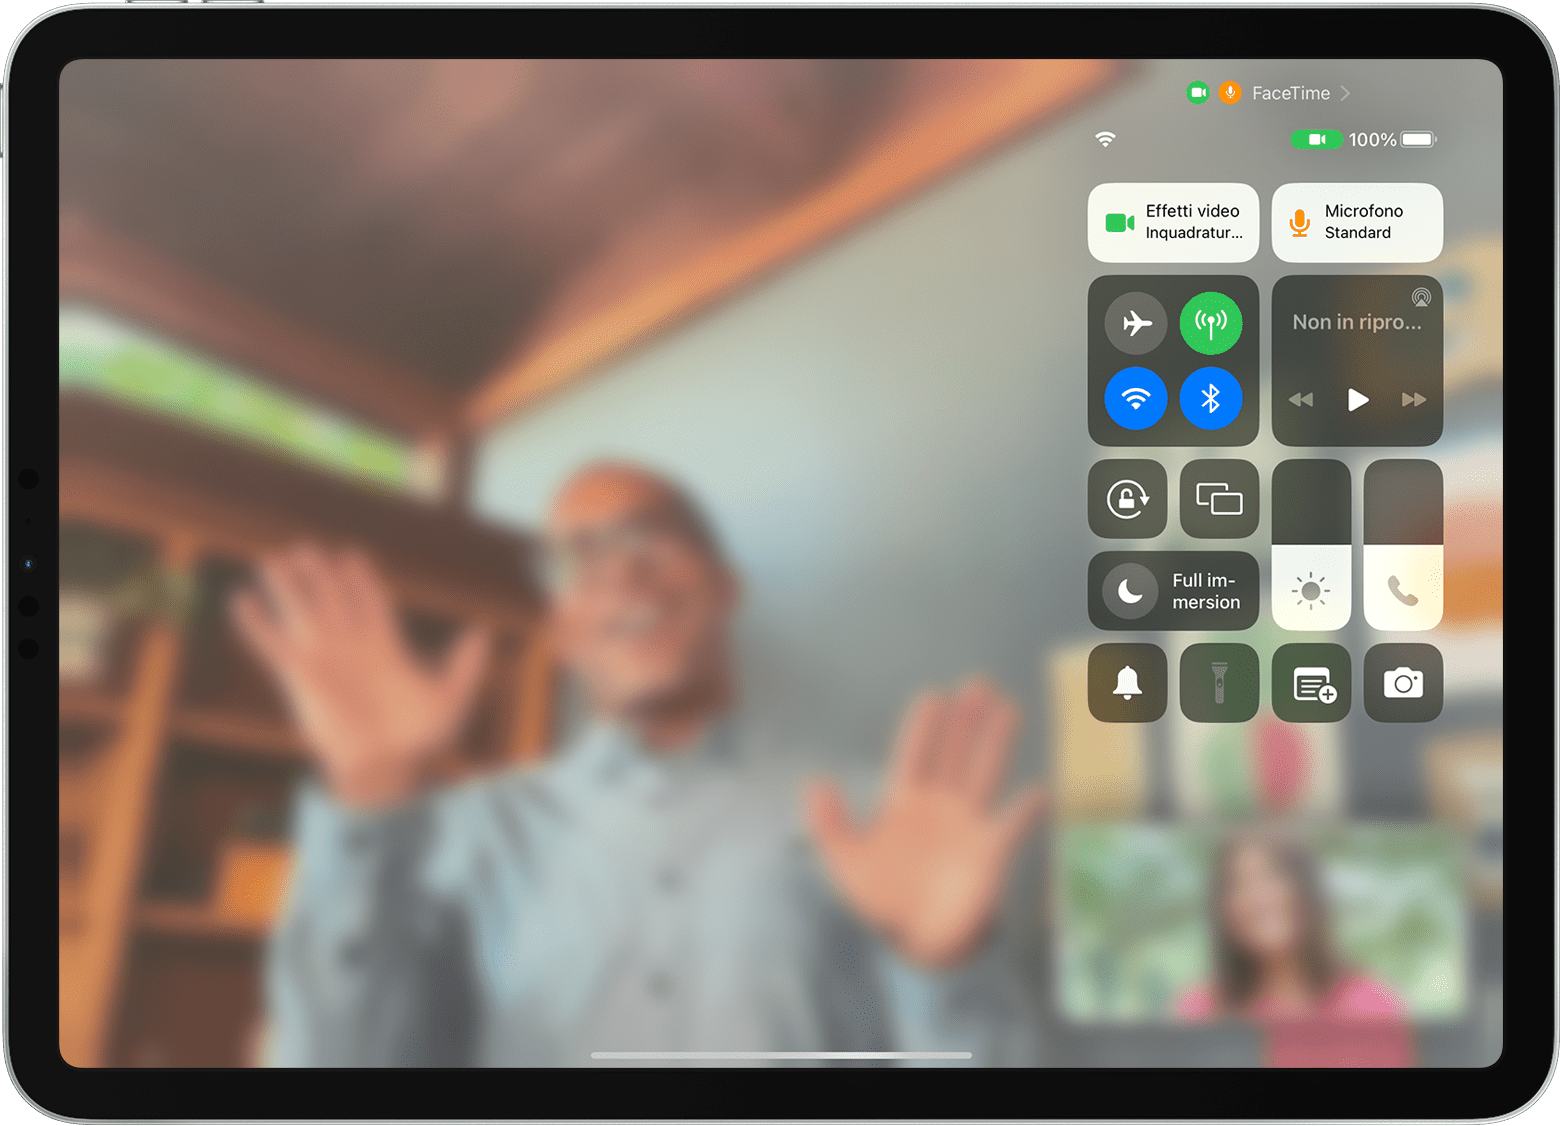 Schermo di iPad che mostra una chiamata FaceTime con il Centro di Controllo visibile, incluso il pulsante Effetti video